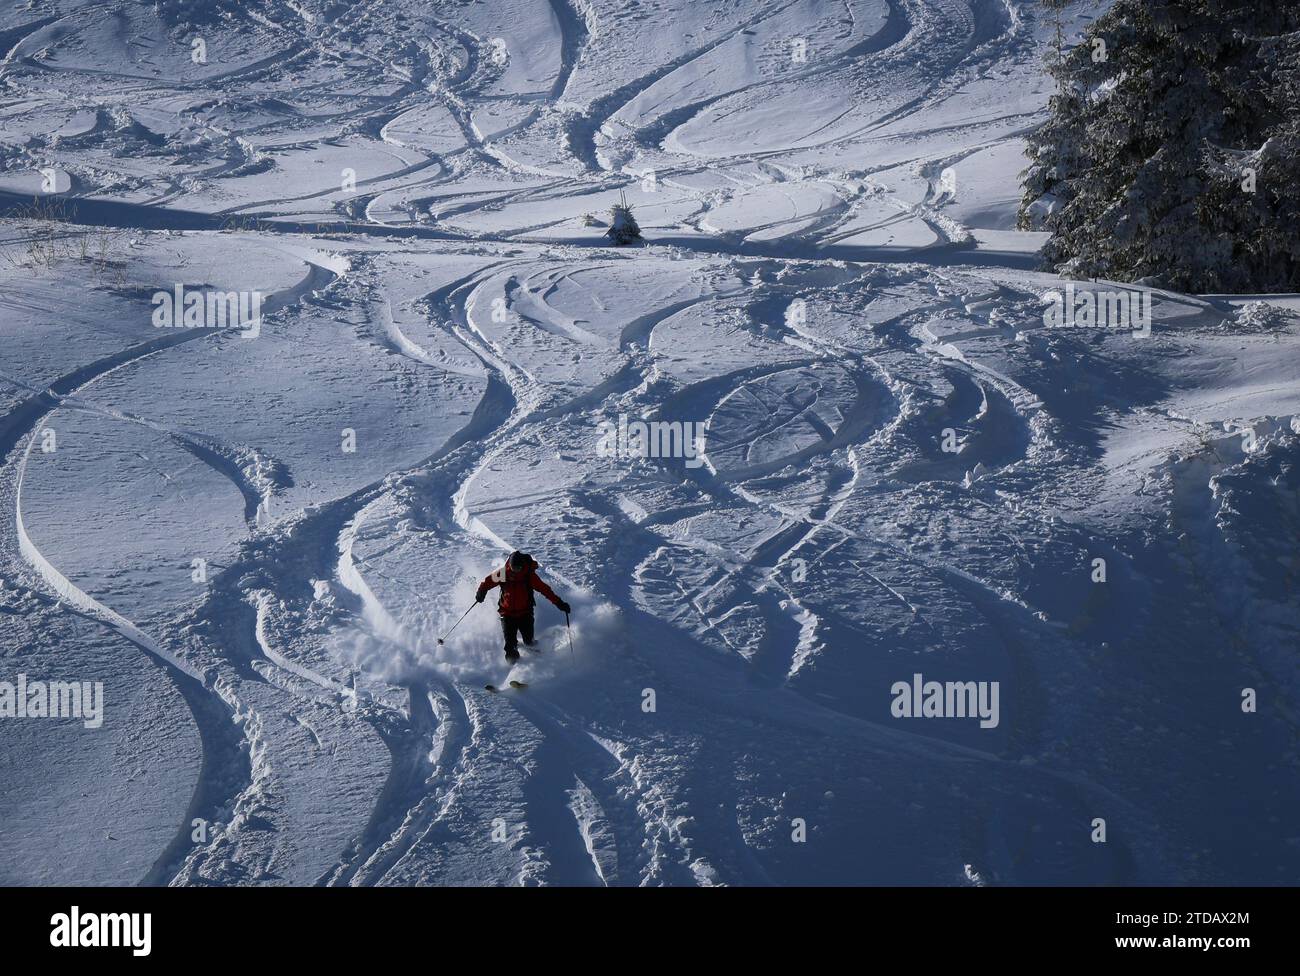 Clima de invierno en Bulgaria. Un esquiador va por una pista de esquí con nieve nueva. Foto de stock